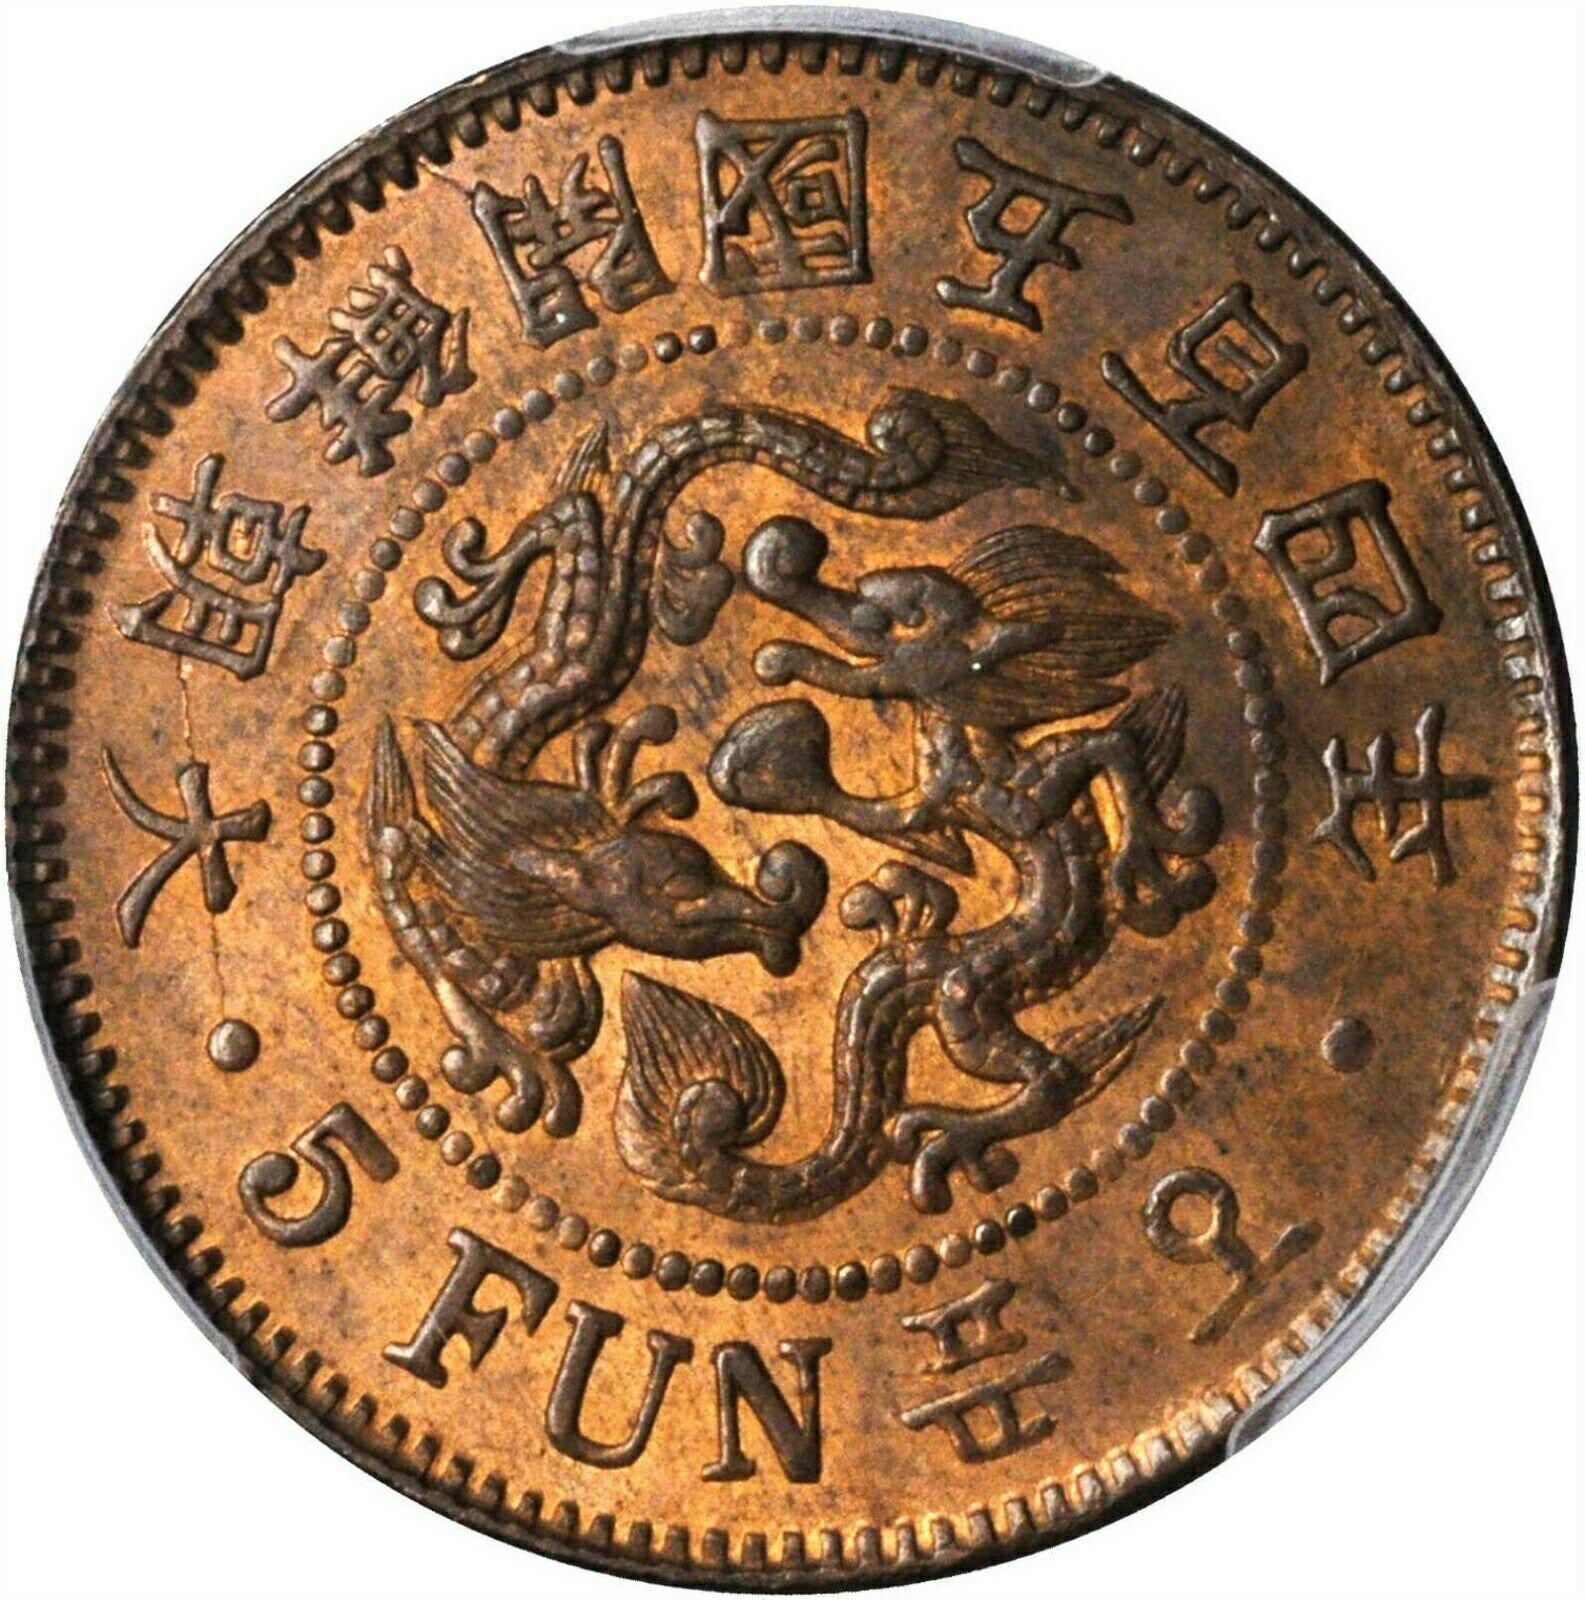 【極美品/品質保証書付】 アンティークコイン 金貨 KOREA. 5 Fun, Year 504 ( 1895 ). Top 1 Coin PCGS MS-63 Red Brown Gold Shield 大朝鮮 [送料無料] #gct-wr-8790-615